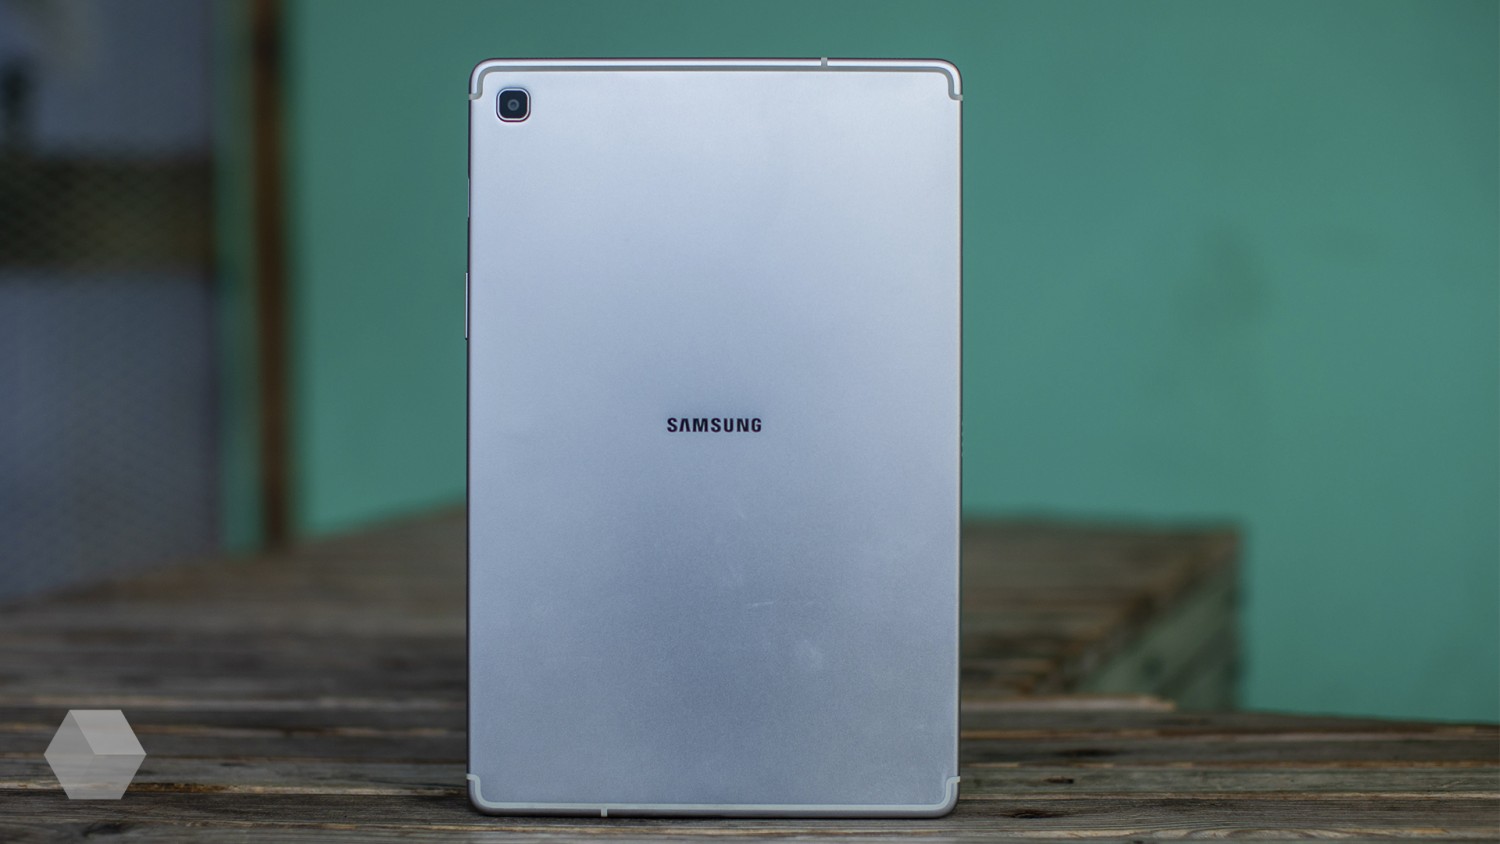 Обзор Samsung Galaxy Tab S5e — сериалостанция или помощник?